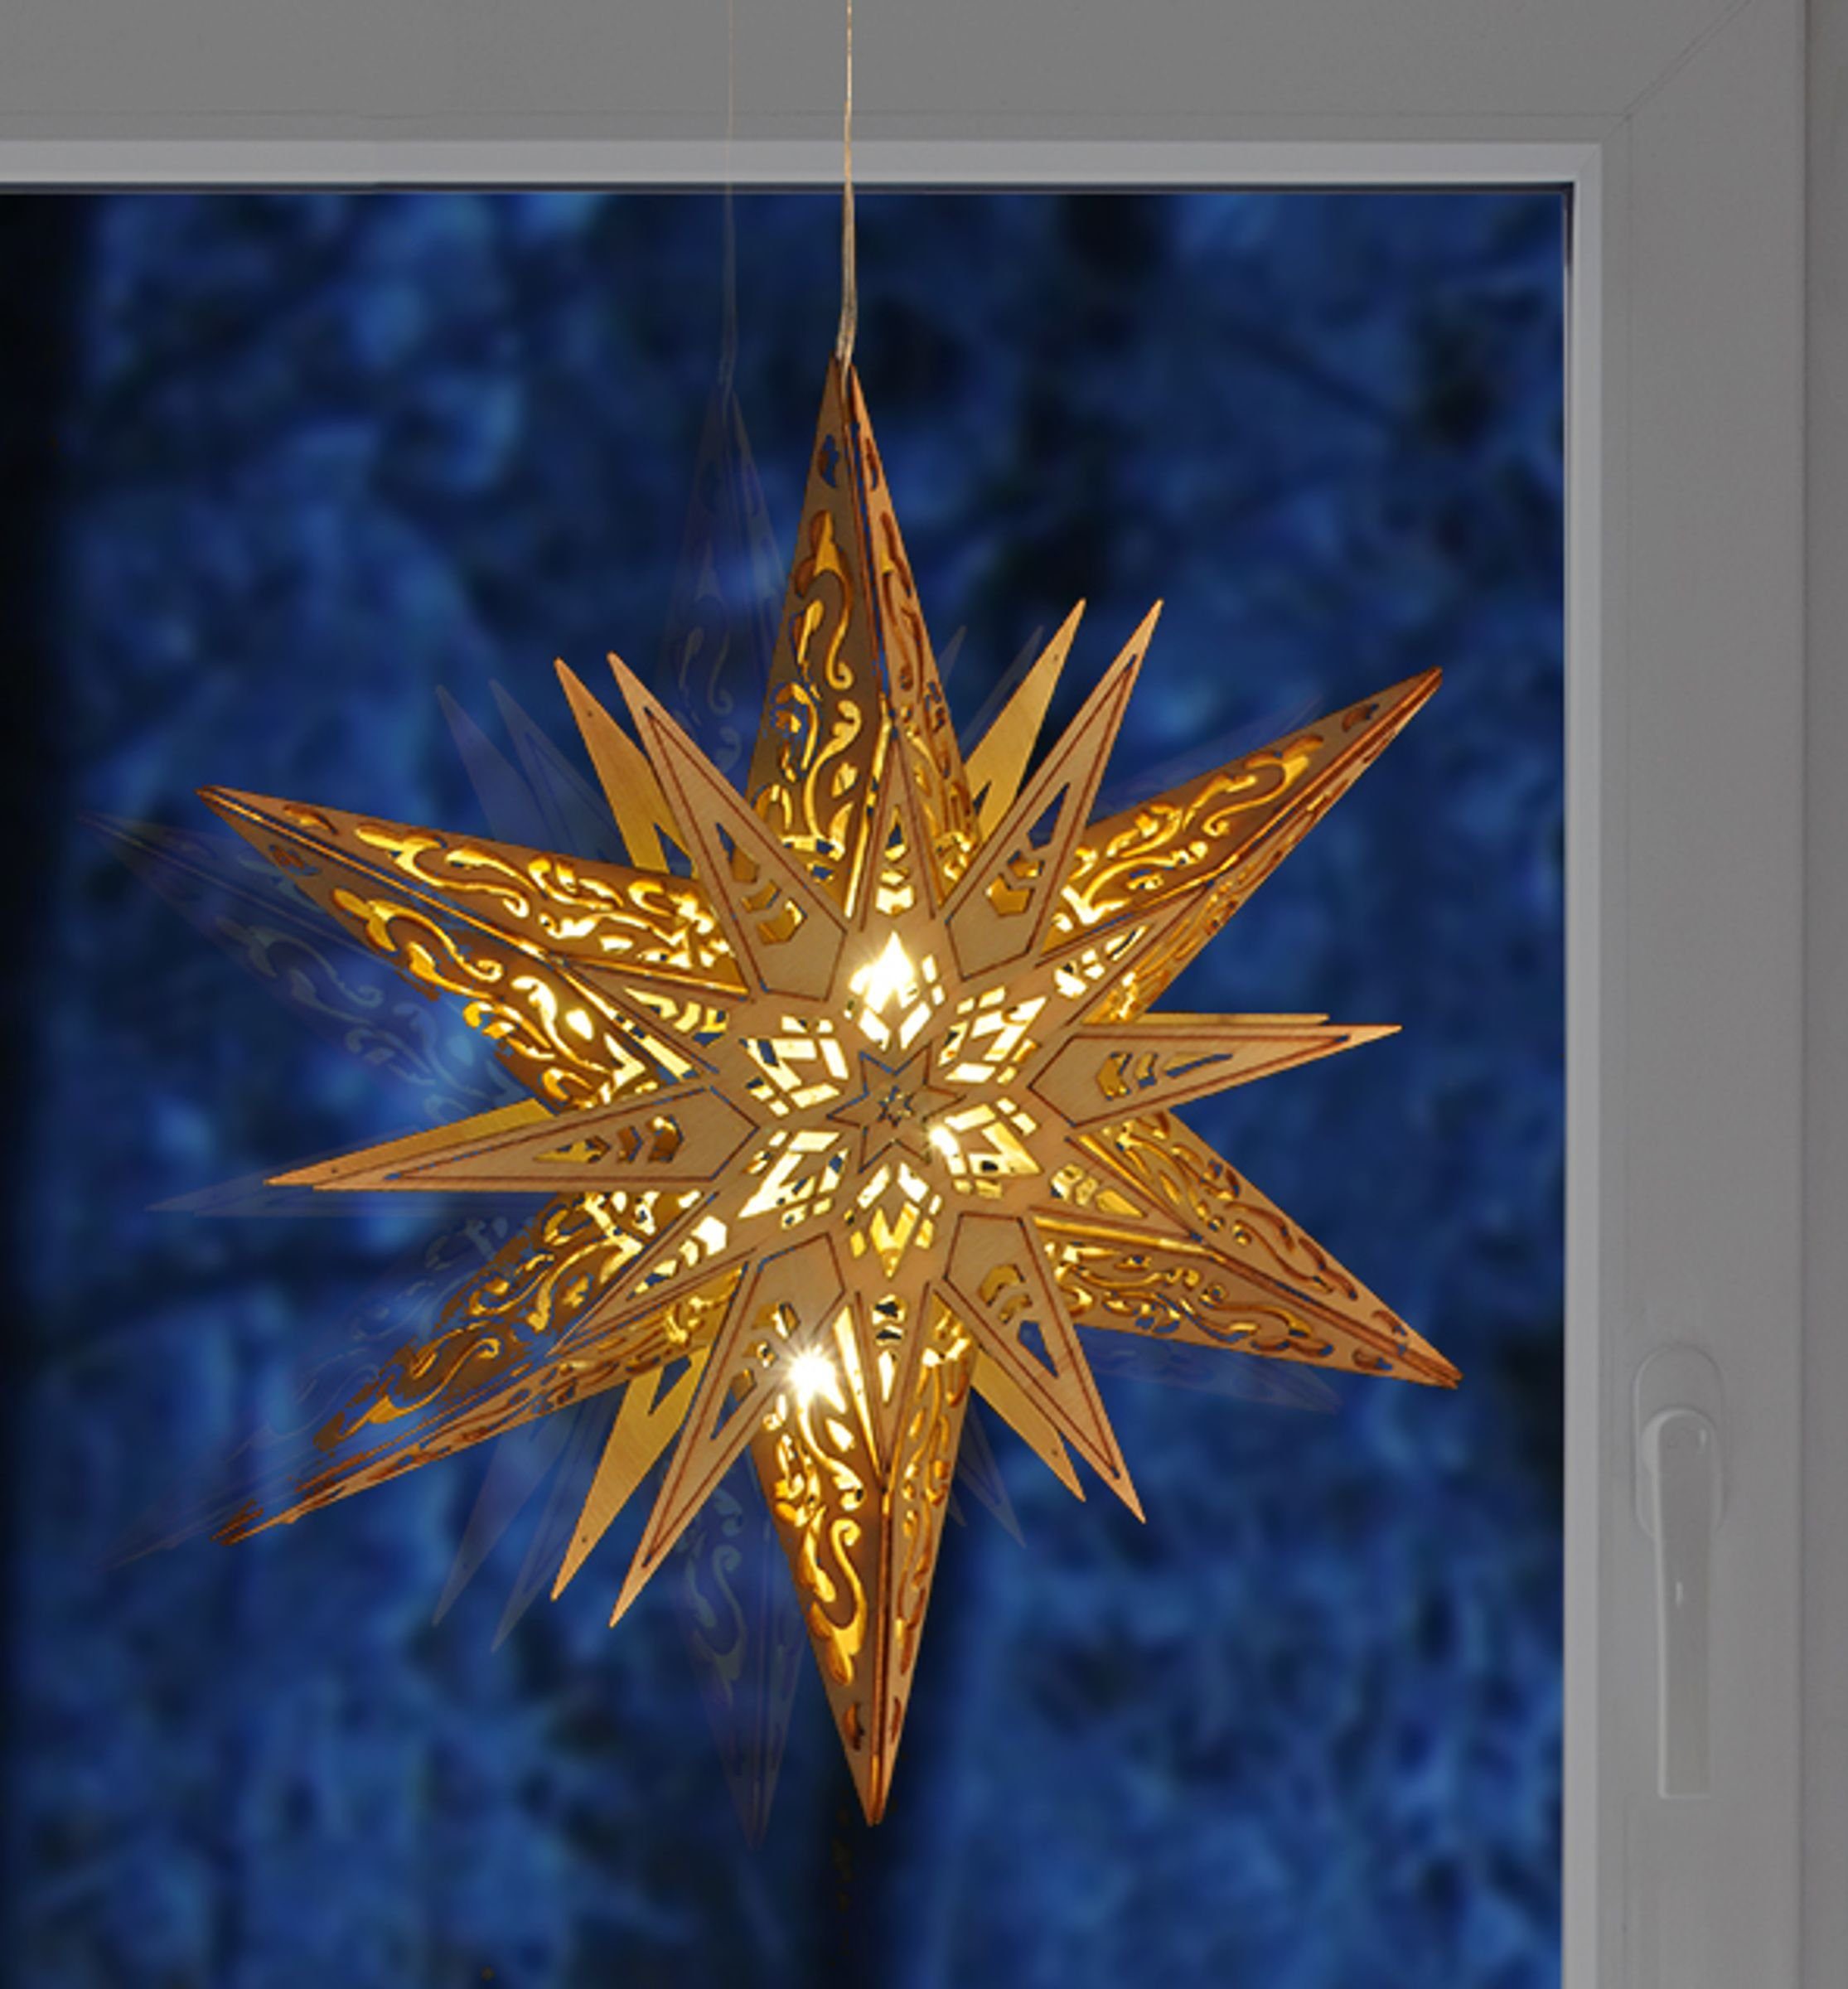 HI Haushalt International LED Stern Beleuchteter Weihnachtsdeko Stern aus Holz Weihnachtsbeleuchtung